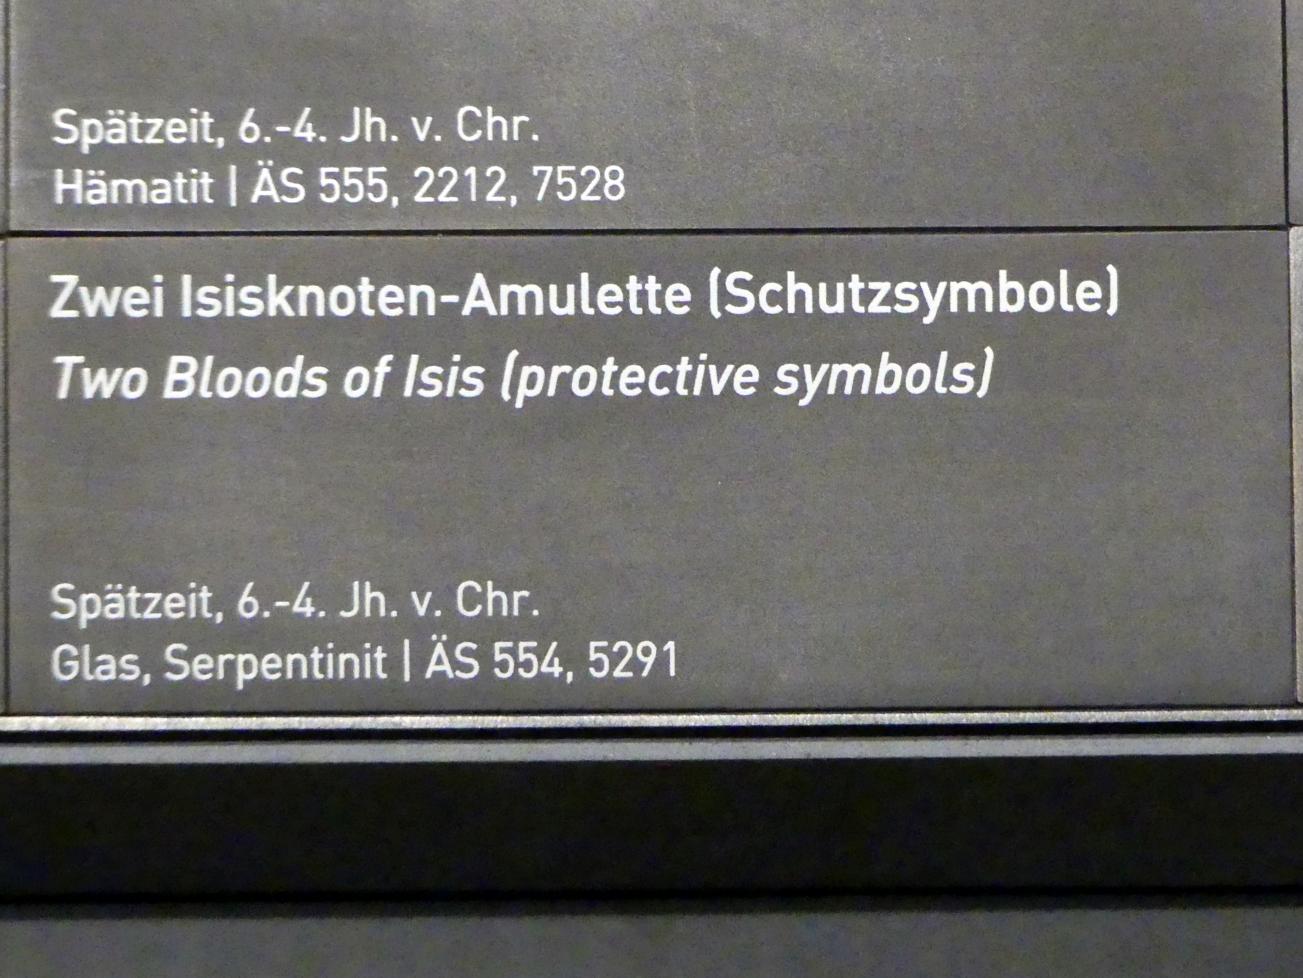 Zwei Isisknoten-Amulette (Schutzsymbole), Spätzeit, 360 - 342 v. Chr., 600 - 300 v. Chr., Bild 2/2